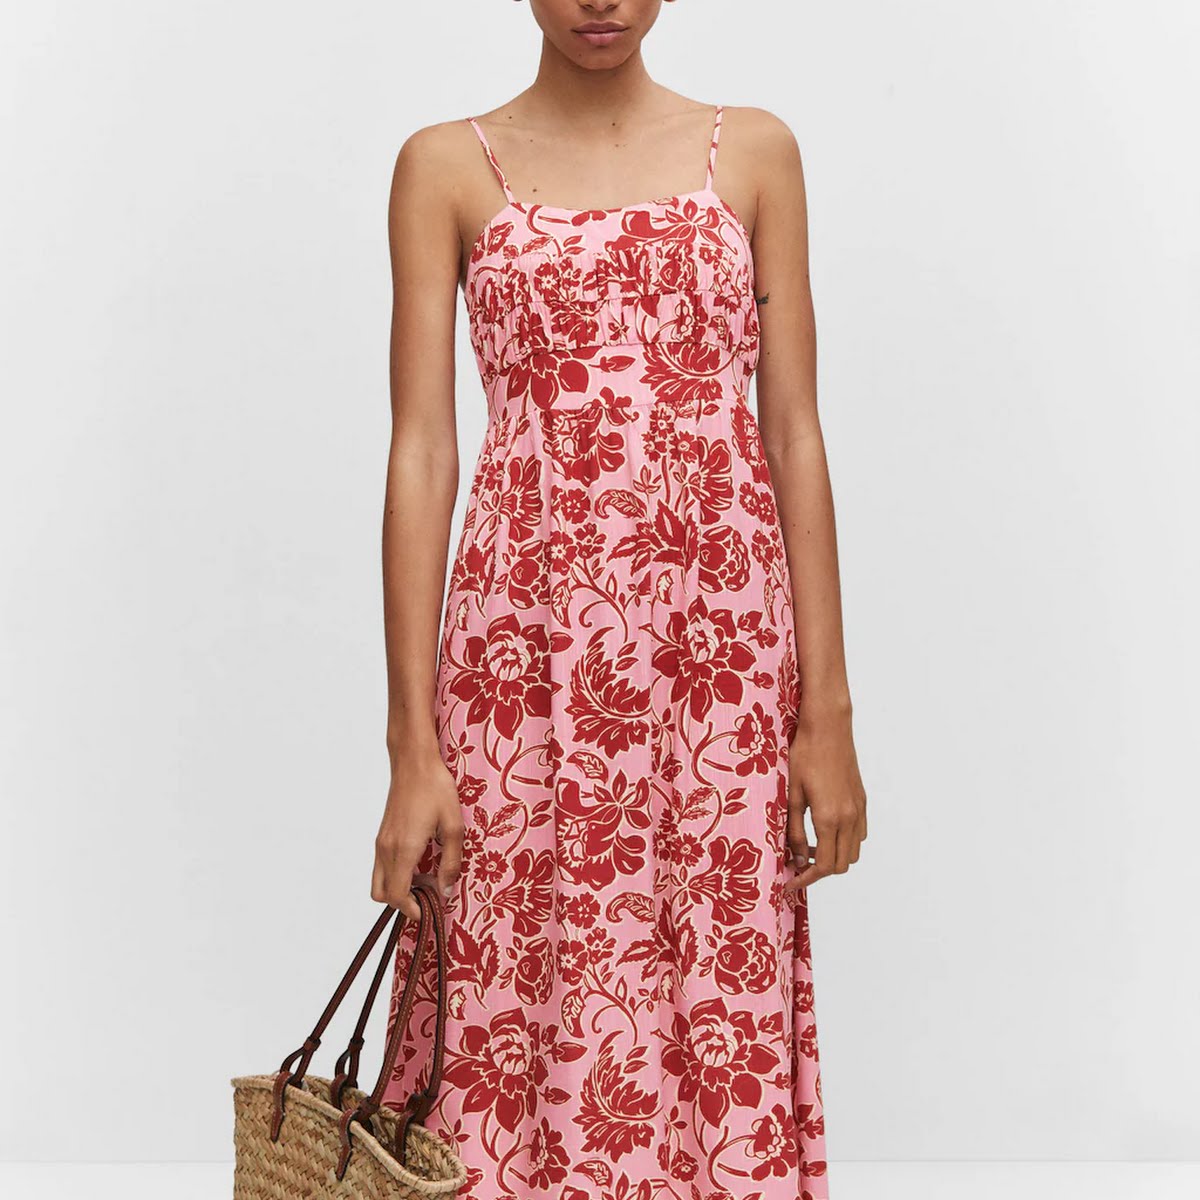 Midi Floral Dress, €45.99